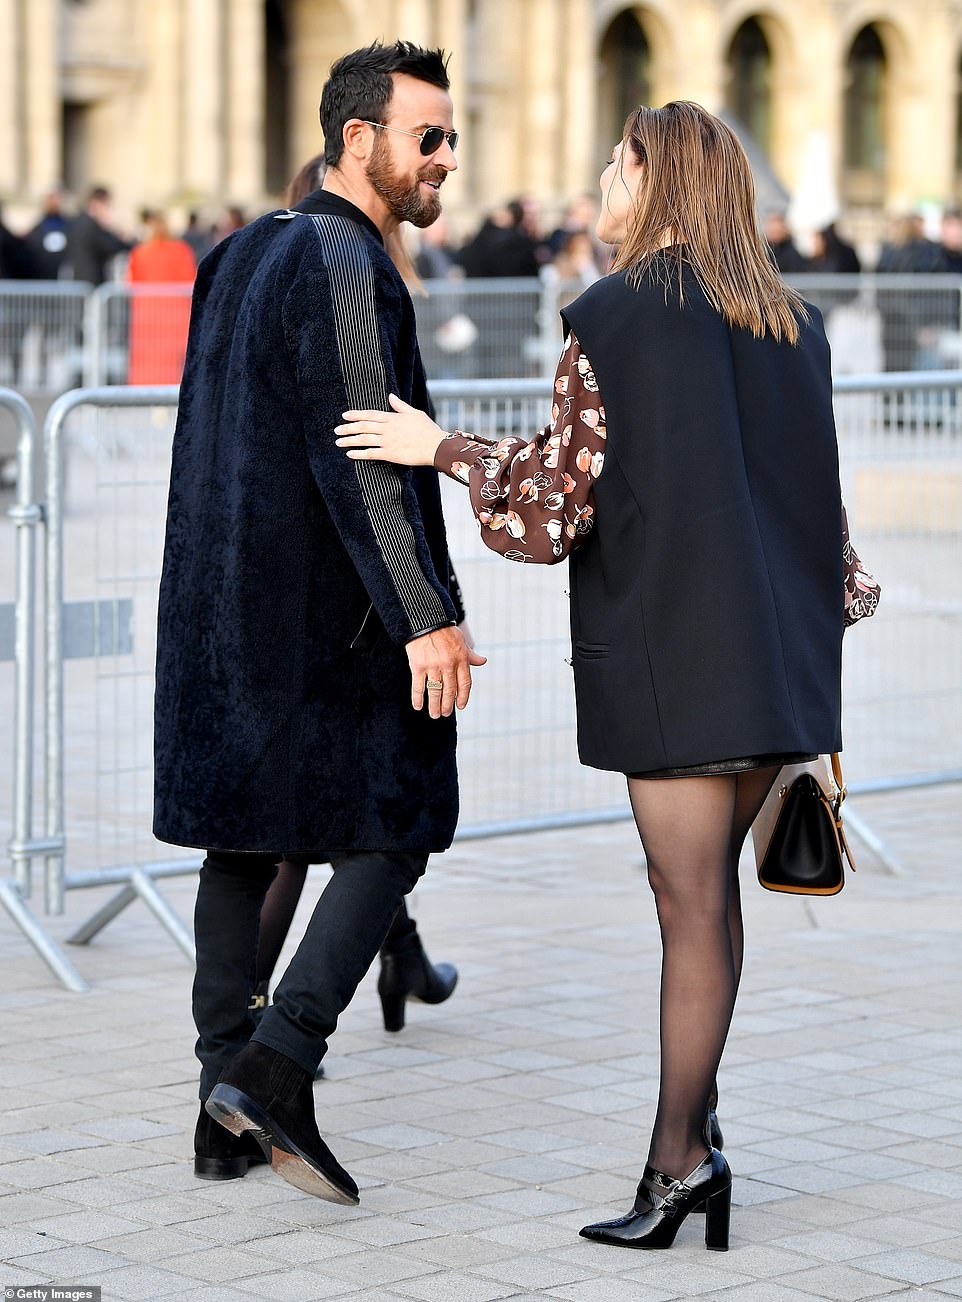 Звезды на модном показе Louis Vuitton в Париже. Часть 2 lea seydoux